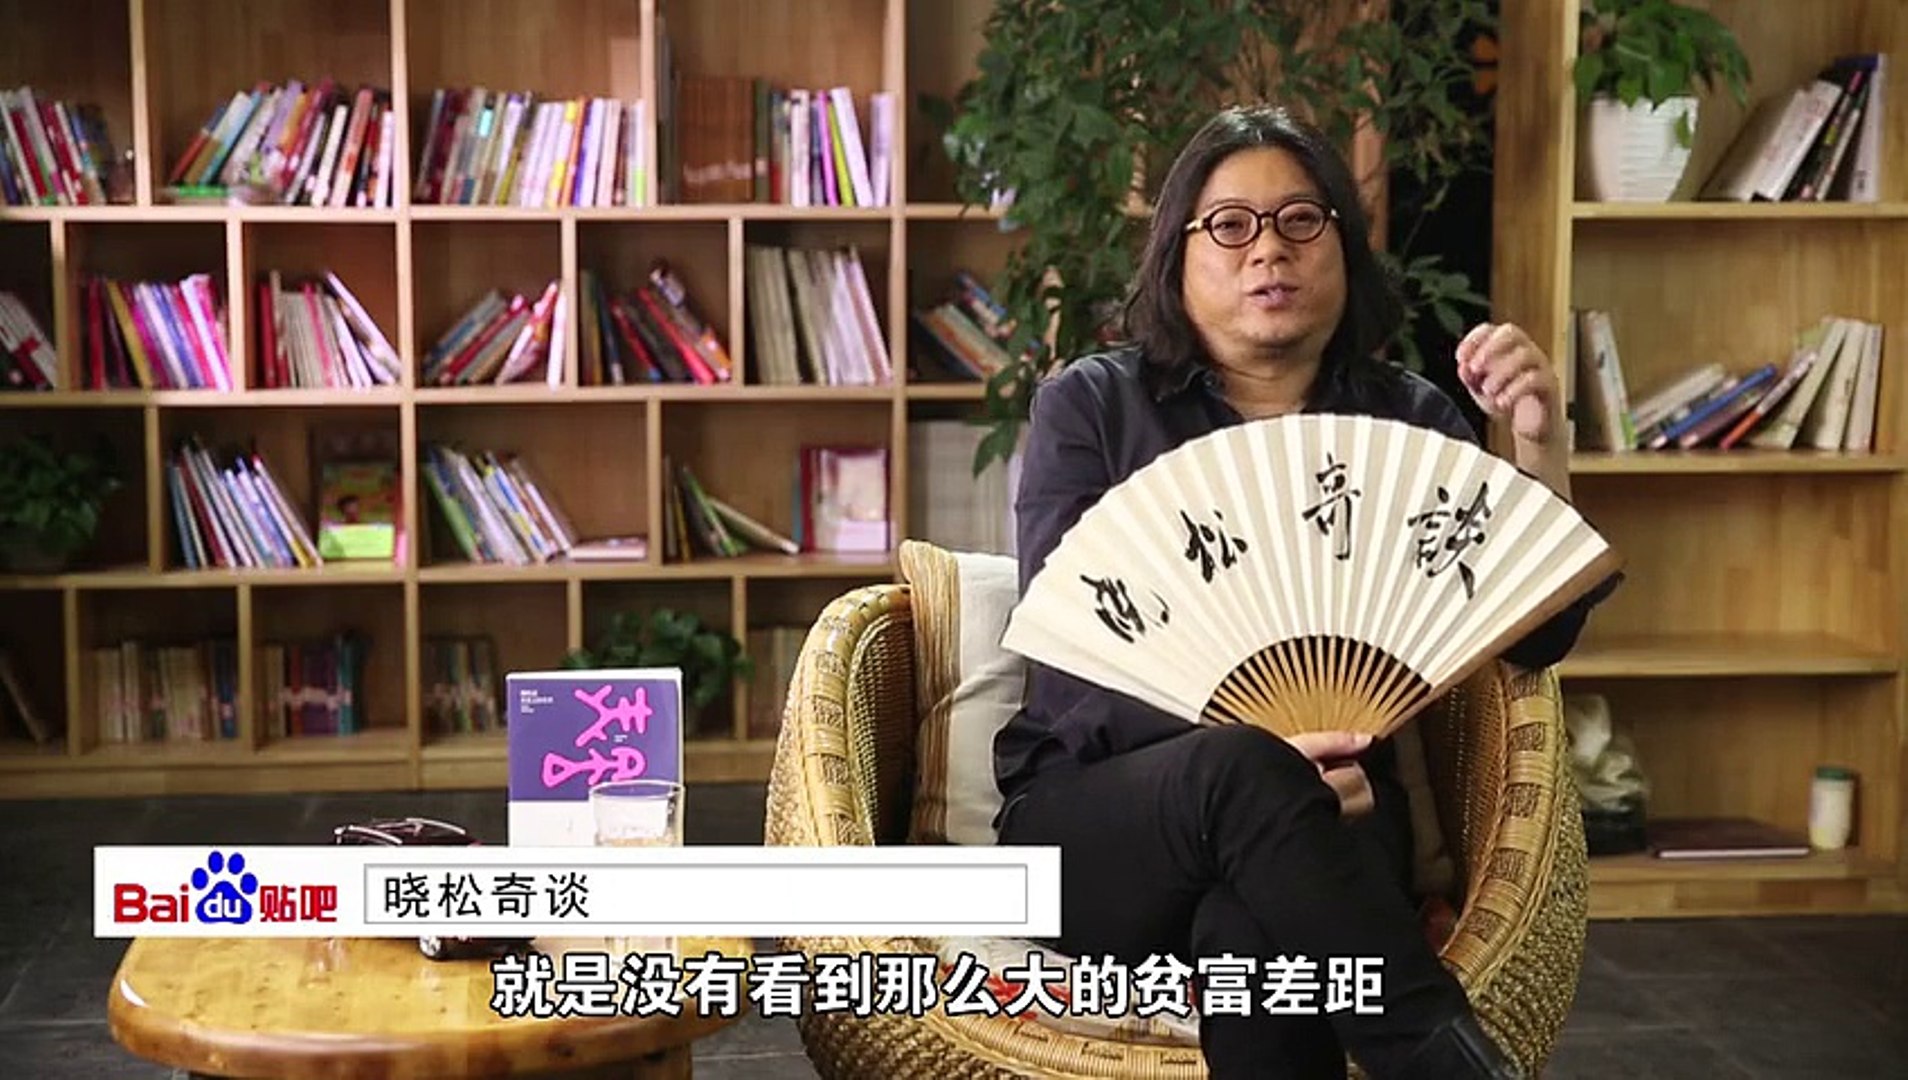 "قاو شياو سونغ 高曉松"، مخرج سينمائي، وكاتب، ومؤلف صيني، وحاليًا رئيس لجنة استراتيجية لشركة علي بابا للترفيه.